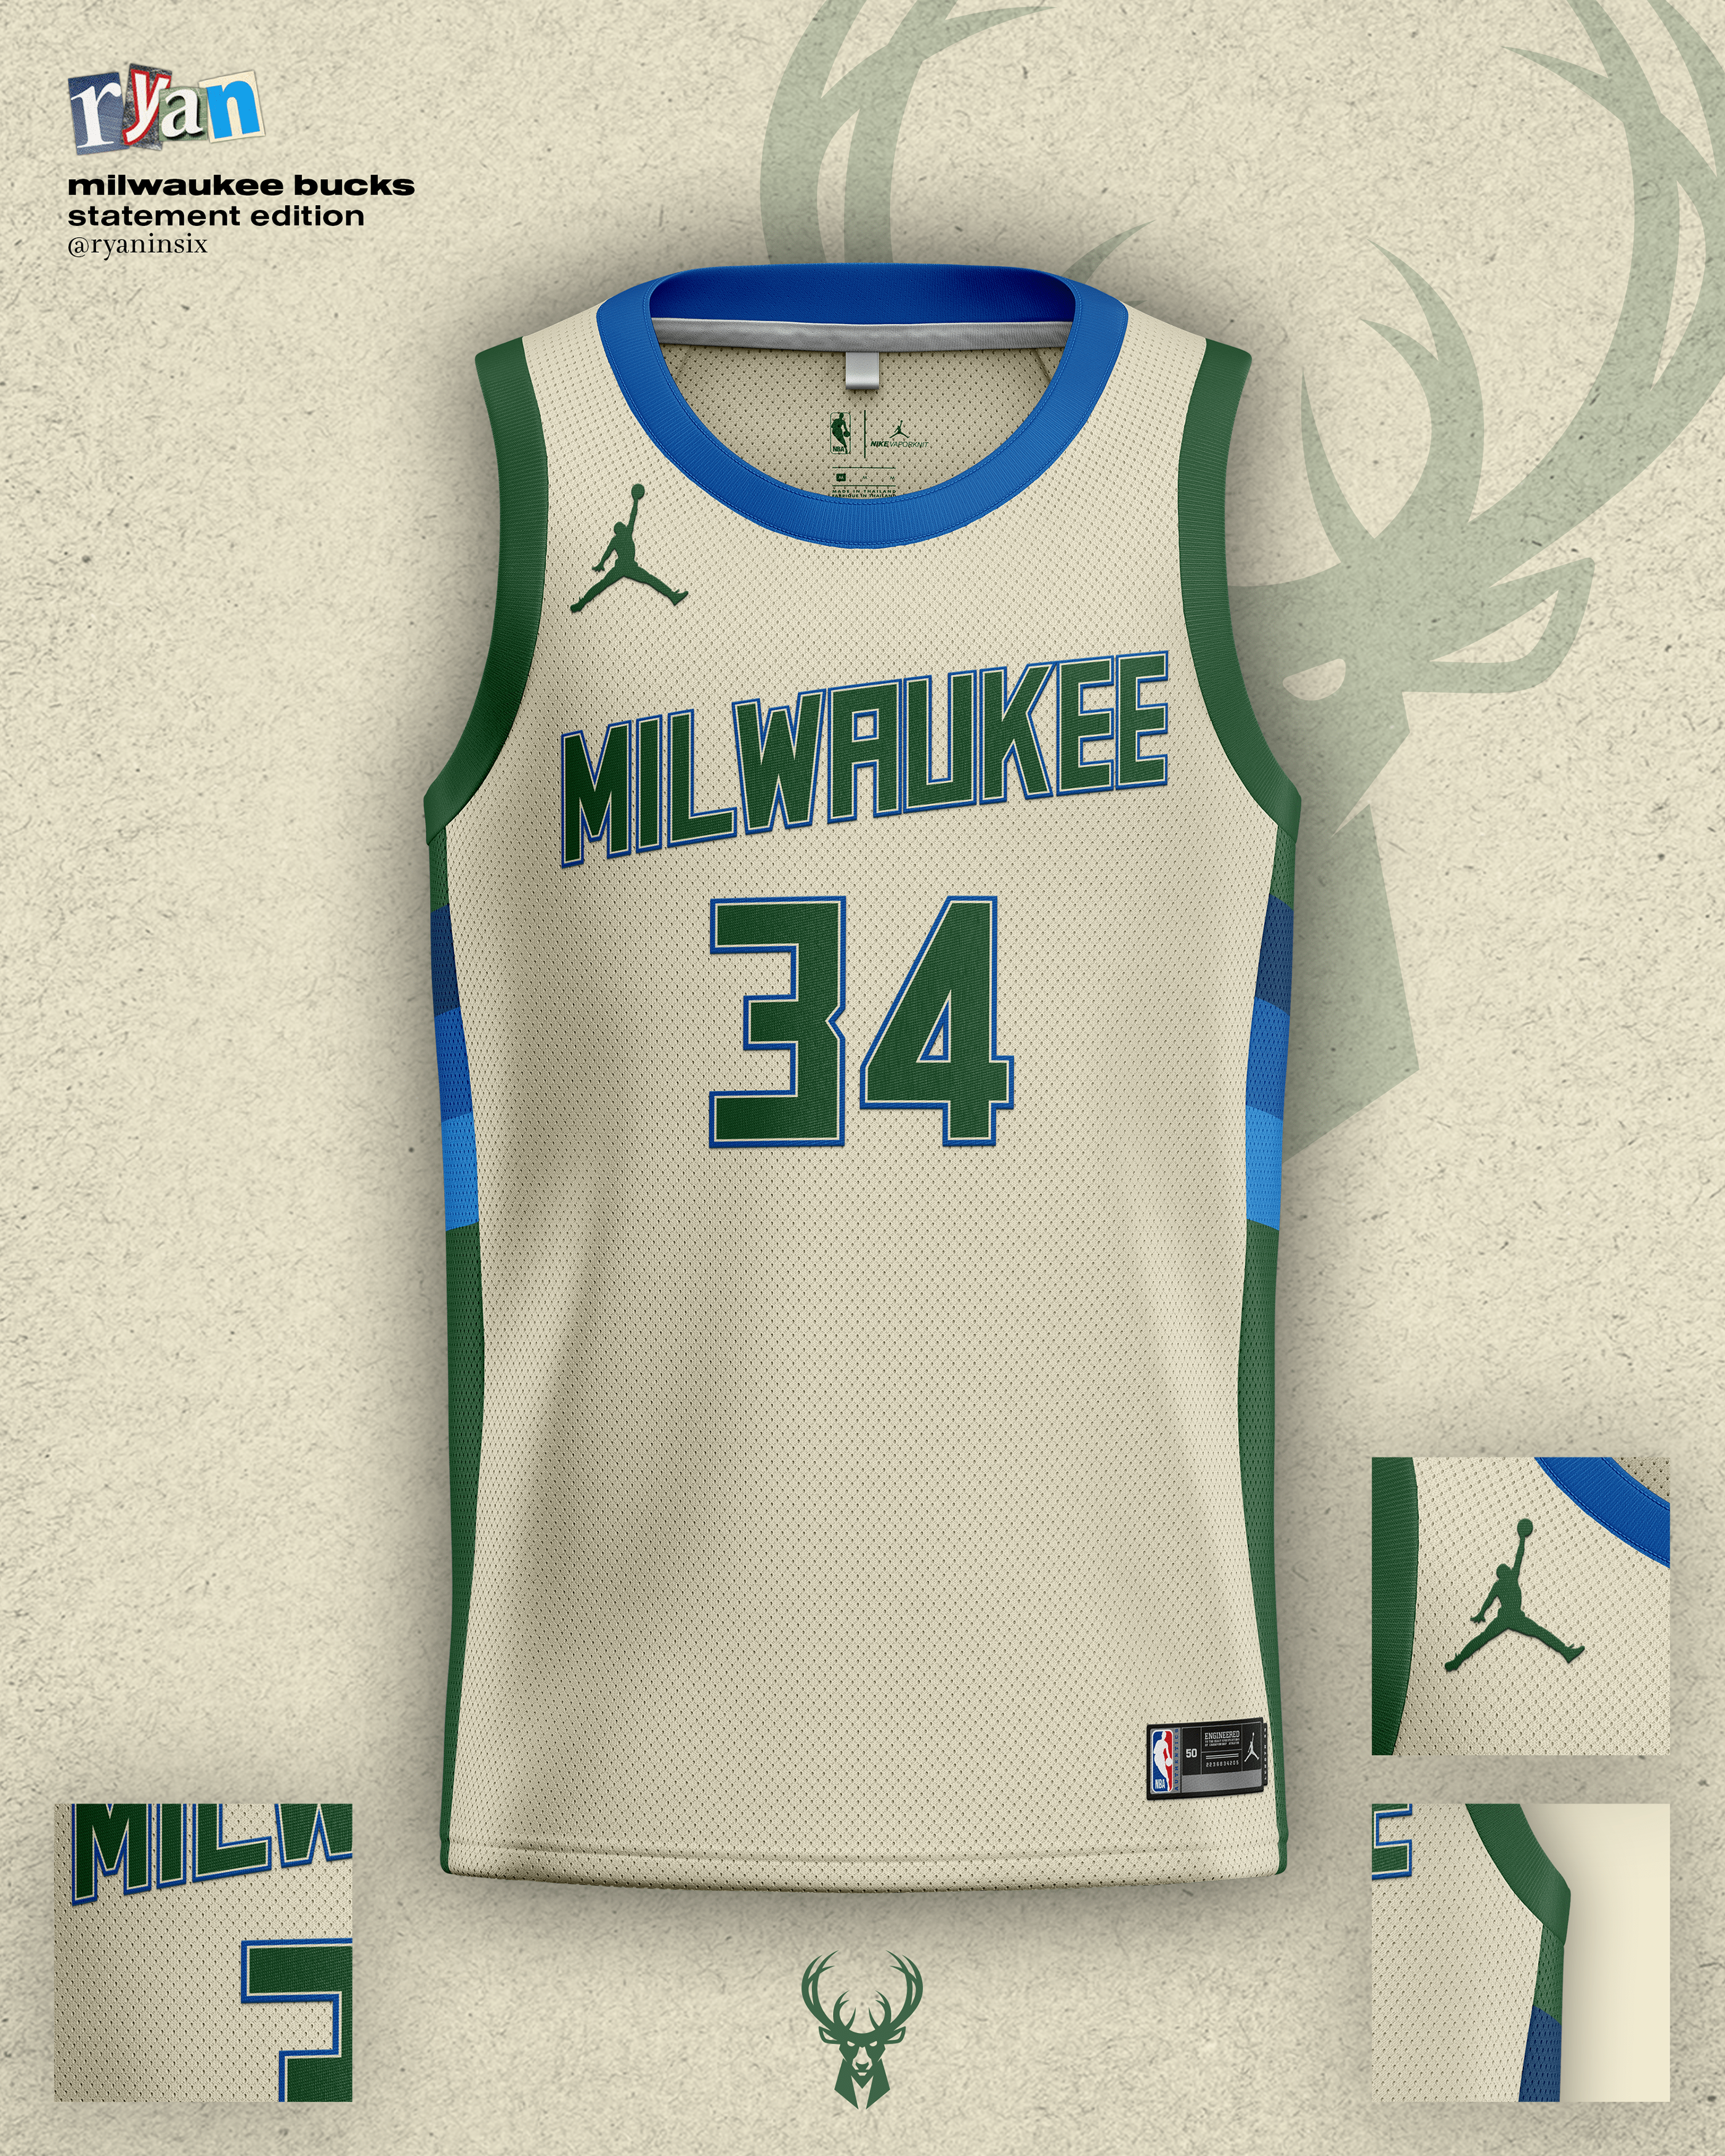 Realistic sport shirt Milwaukee Bucks, jersey template for